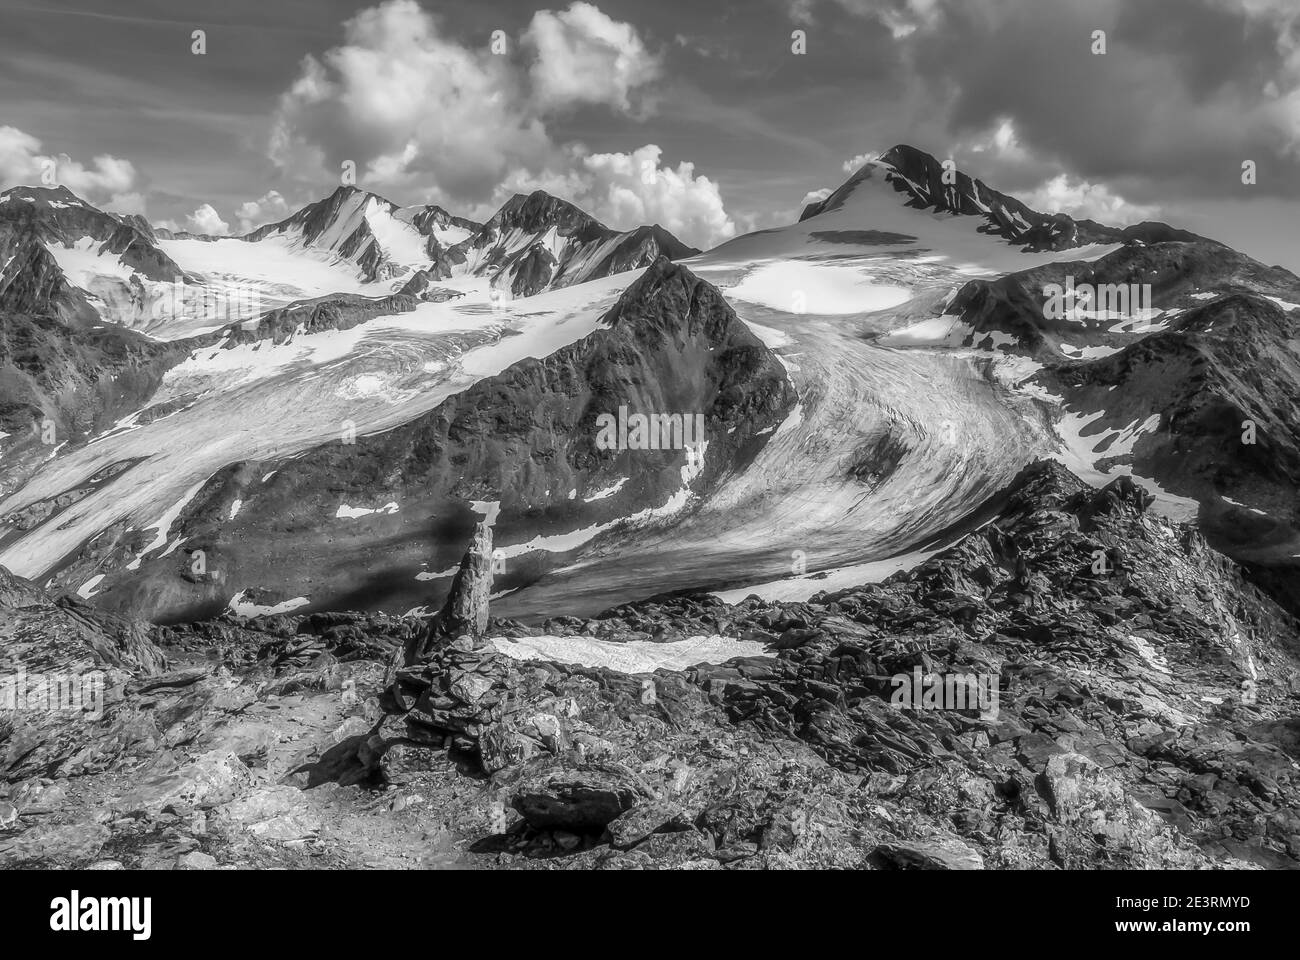 Österreich. Dramatische Bergbilder in Monochrom vom Similaun im österreichischen Tirol der Ötztaler Alpen, das an der österreichisch-italienischen Grenze zu Südtirol liegt und wo auch der 5000 Jahre alte Eismann Oezti gefunden wurde Stockfoto